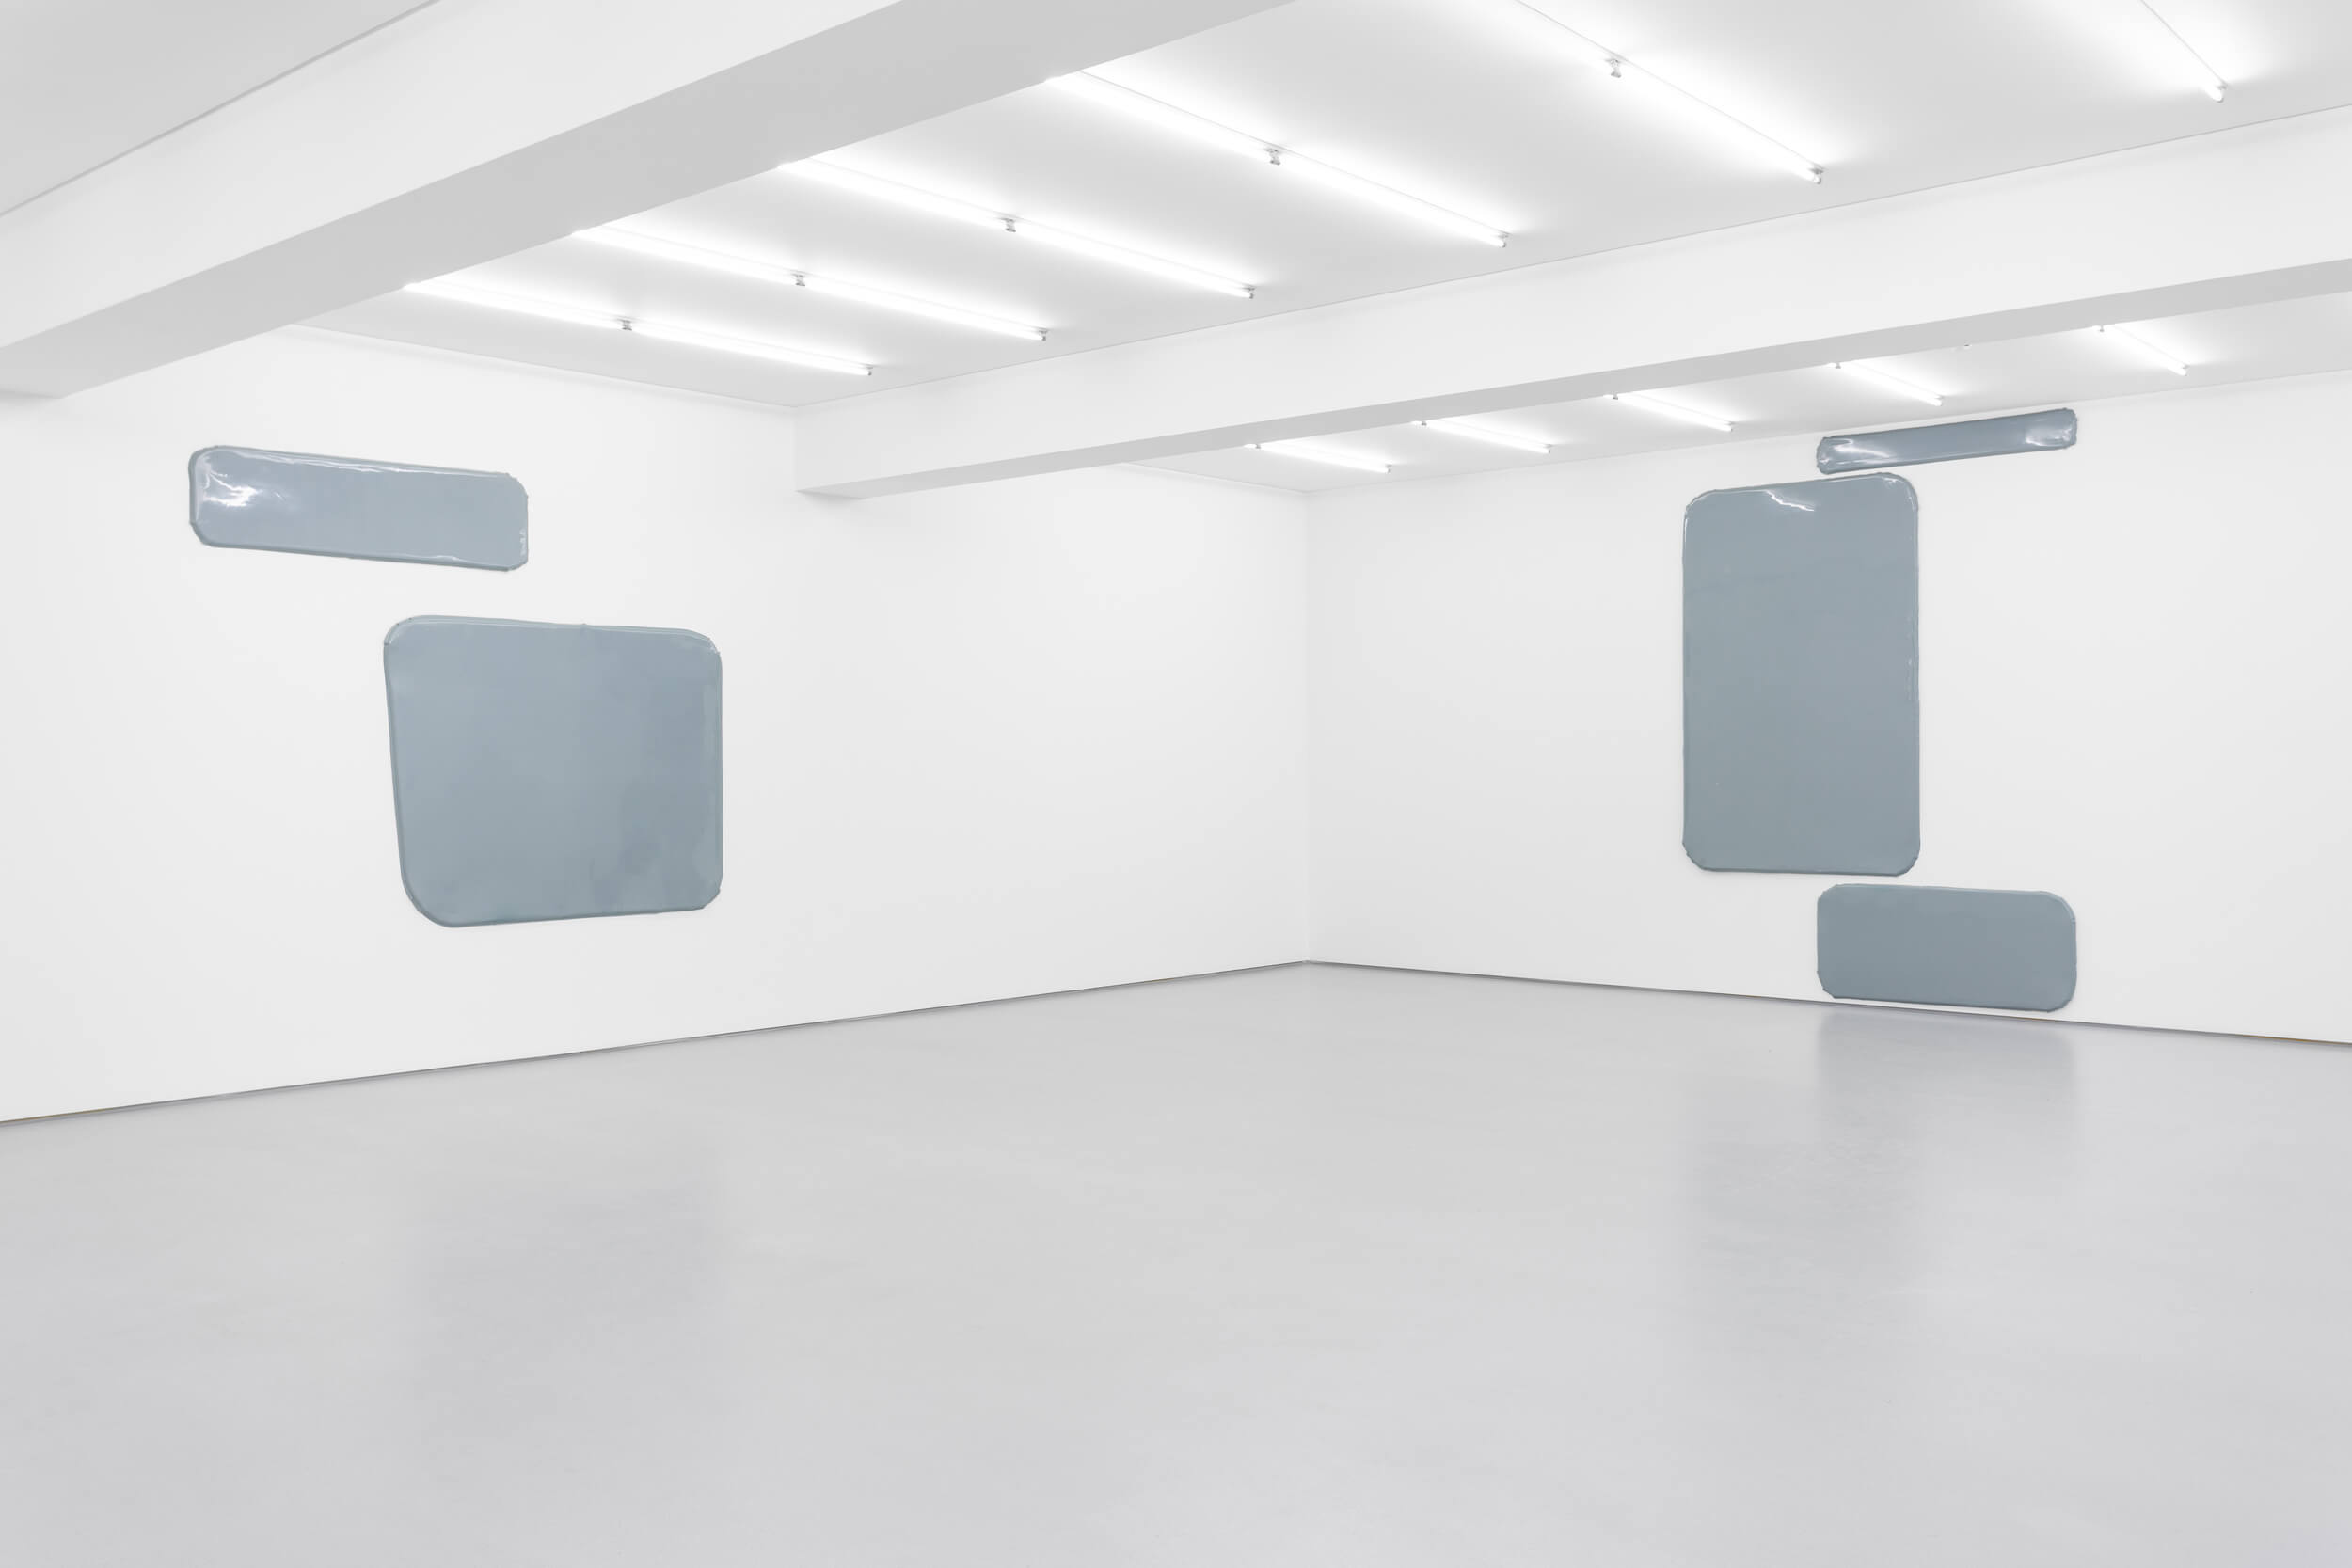 Exhibition view: Gonçalo Barreiros, então aquilo que. Galeria Vera Cortês, 2021
